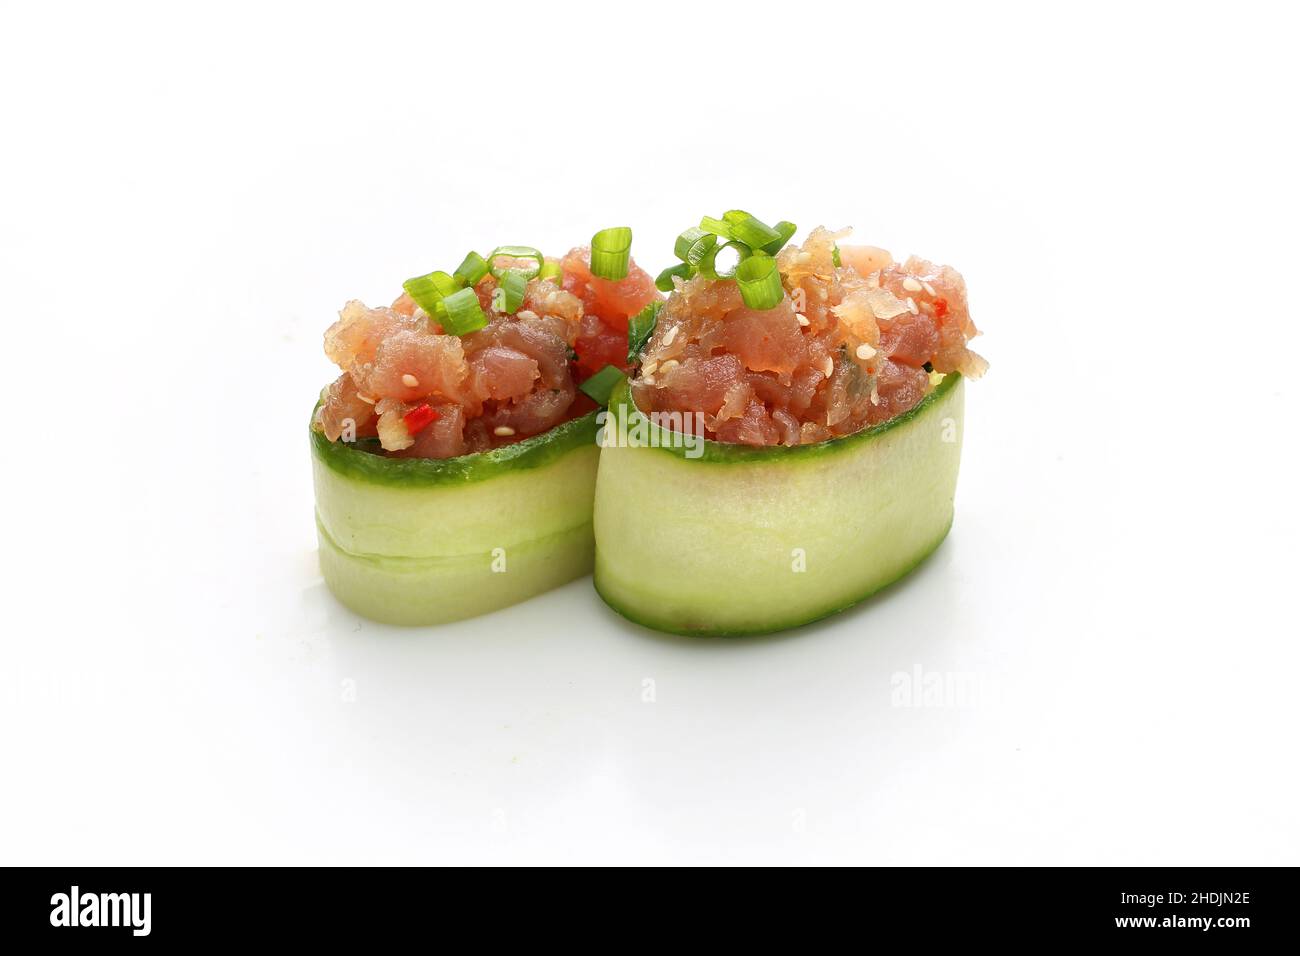 Tartare de saumon dans un concombre.Salade de poisson frais hachée.Plat traditionnel japonais sur fond blanc. Banque D'Images